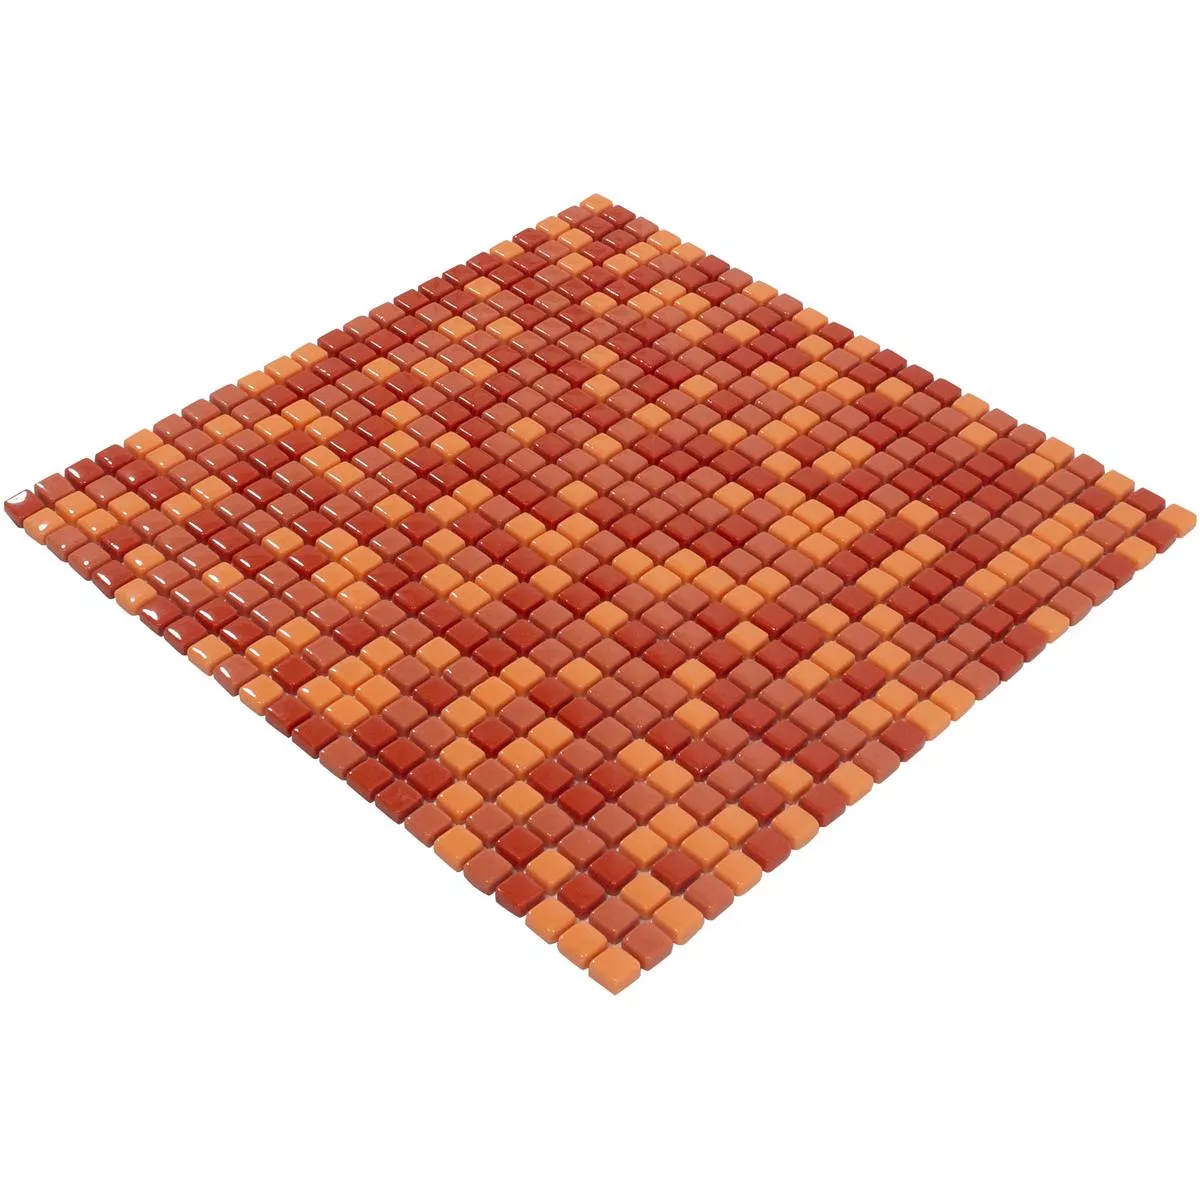 Üvegmozaik Csempék Delight Piros-Narancssárga Mix